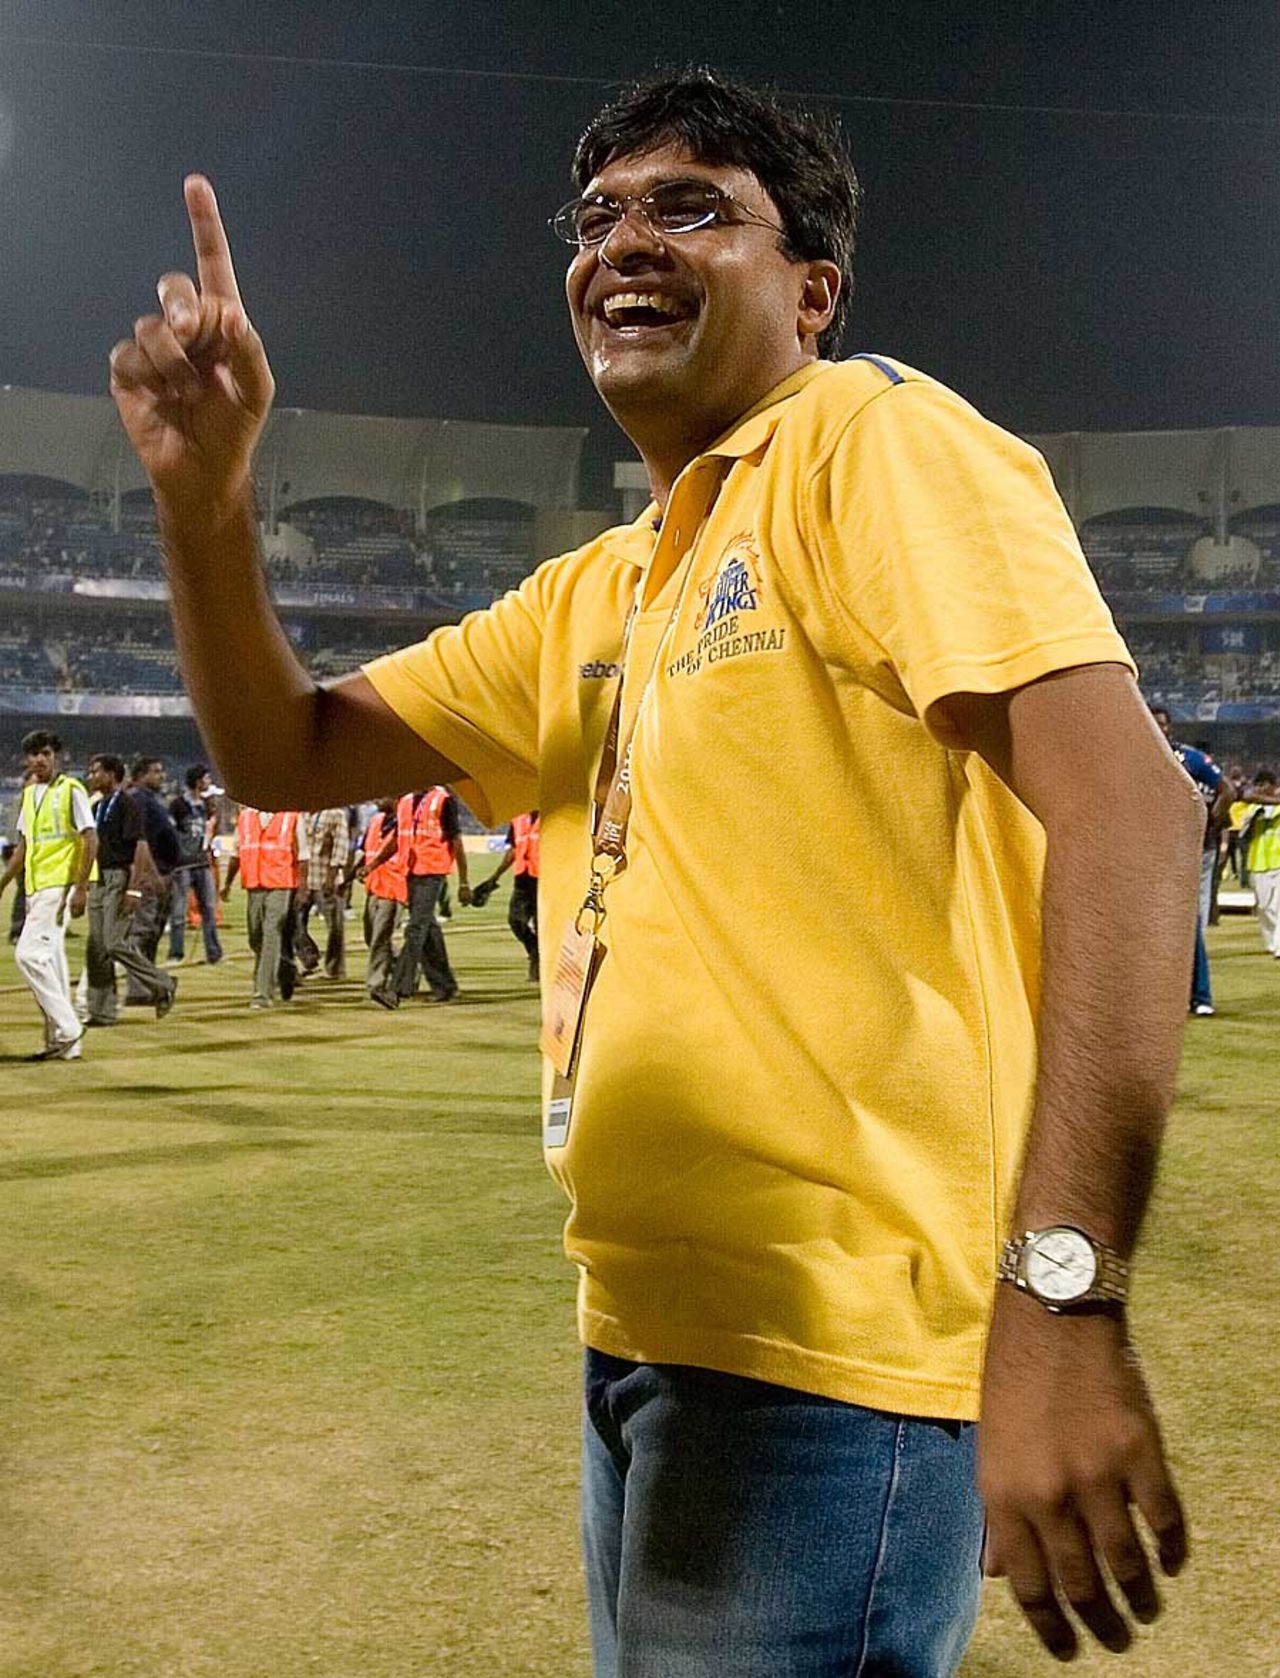 Gurunath Meiyappan, a top CSK official, smiles after a game, Mumbai, April 25, 2010